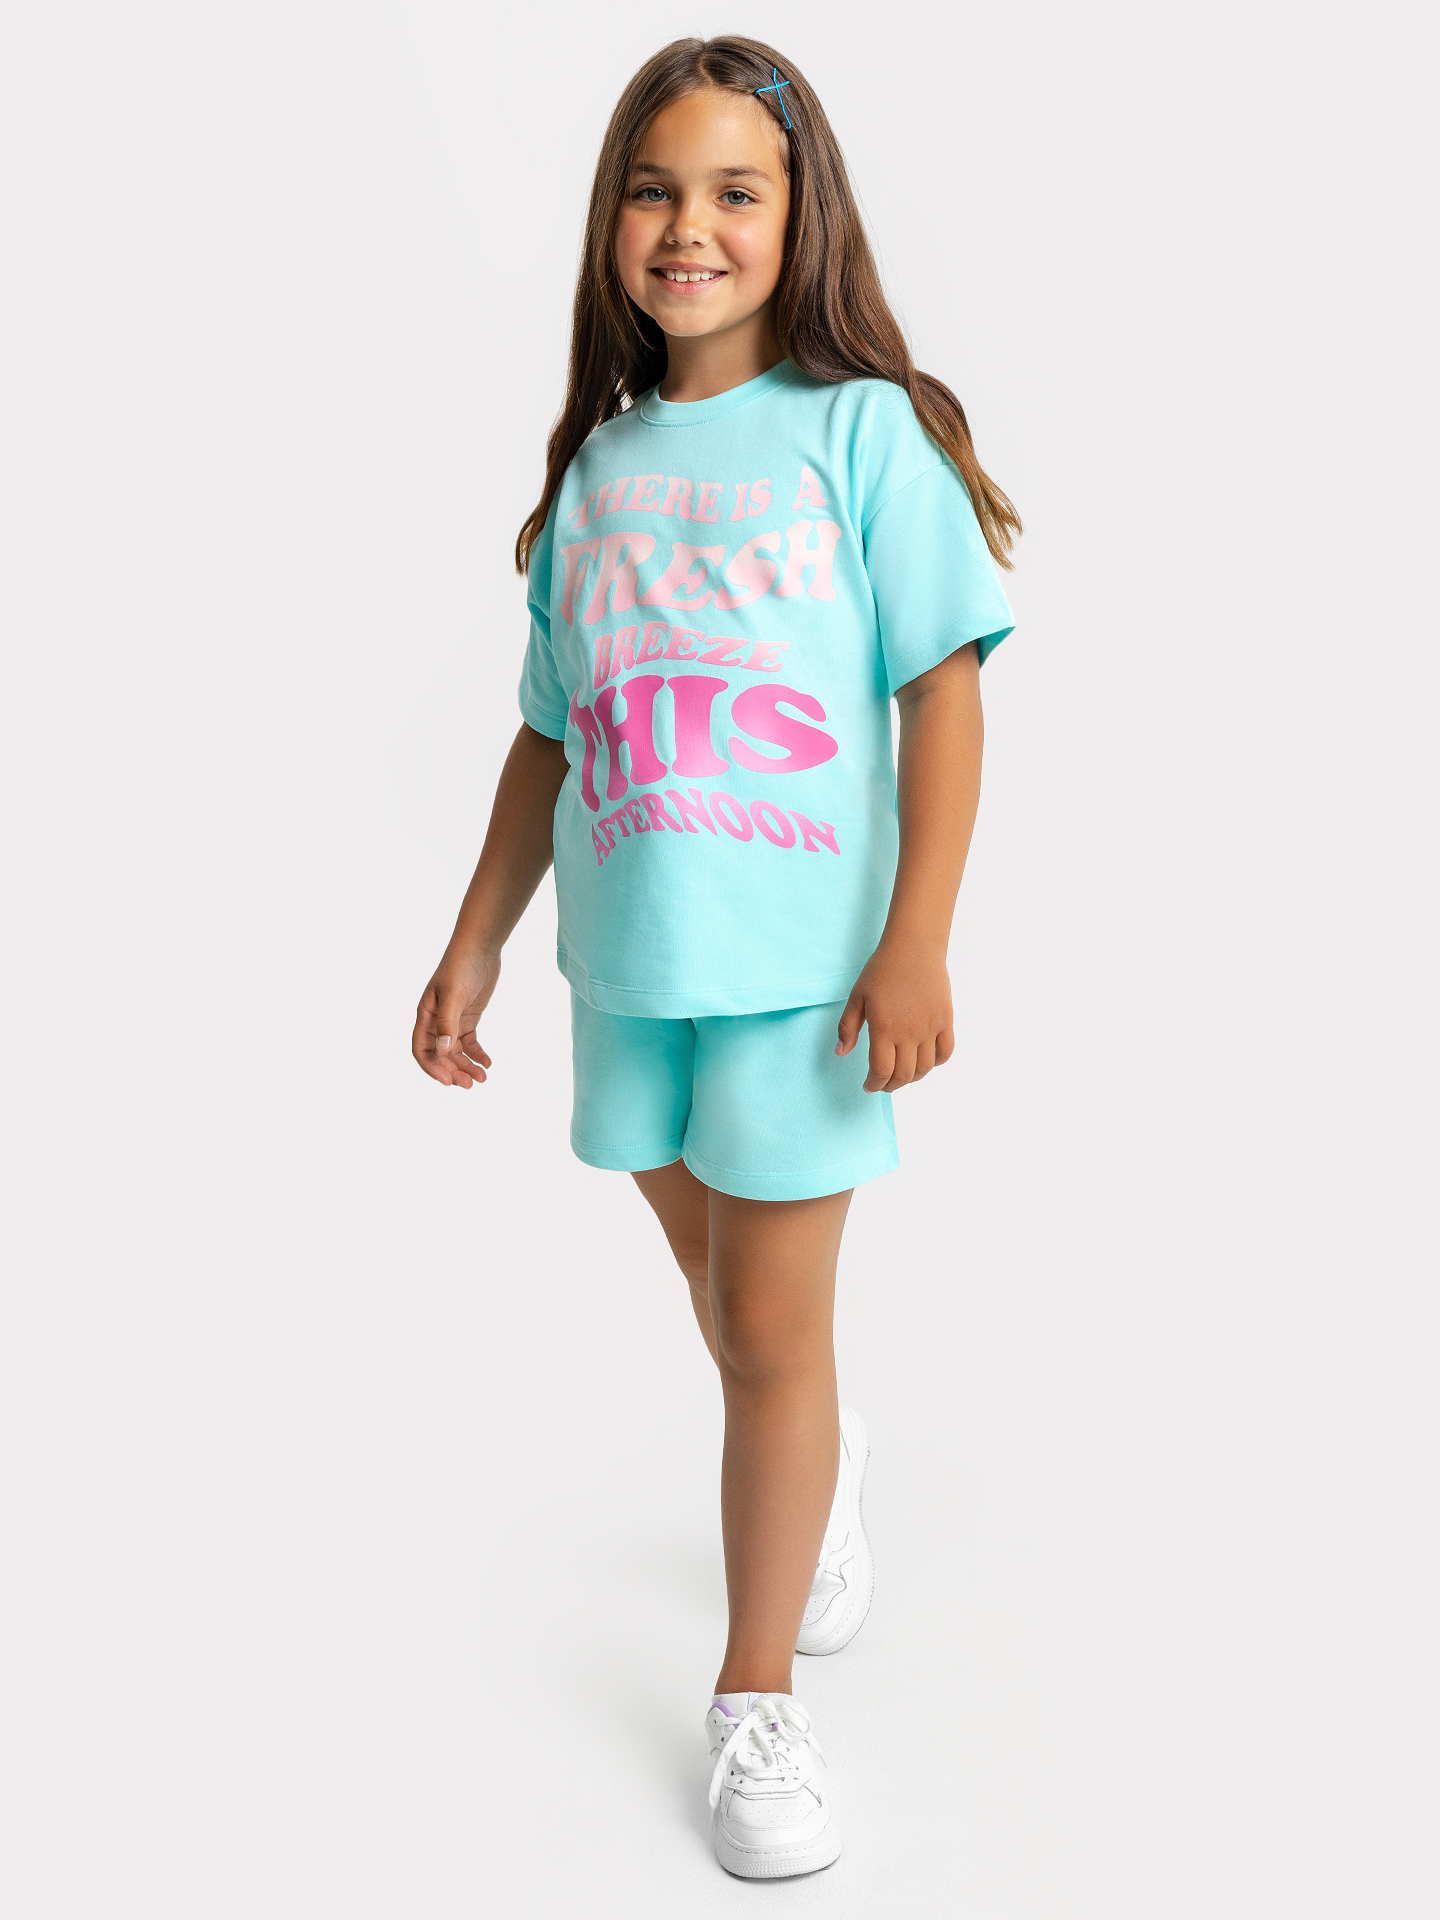 Комплект для девочек (футболка, шорты) бирюзового цвета с принтом